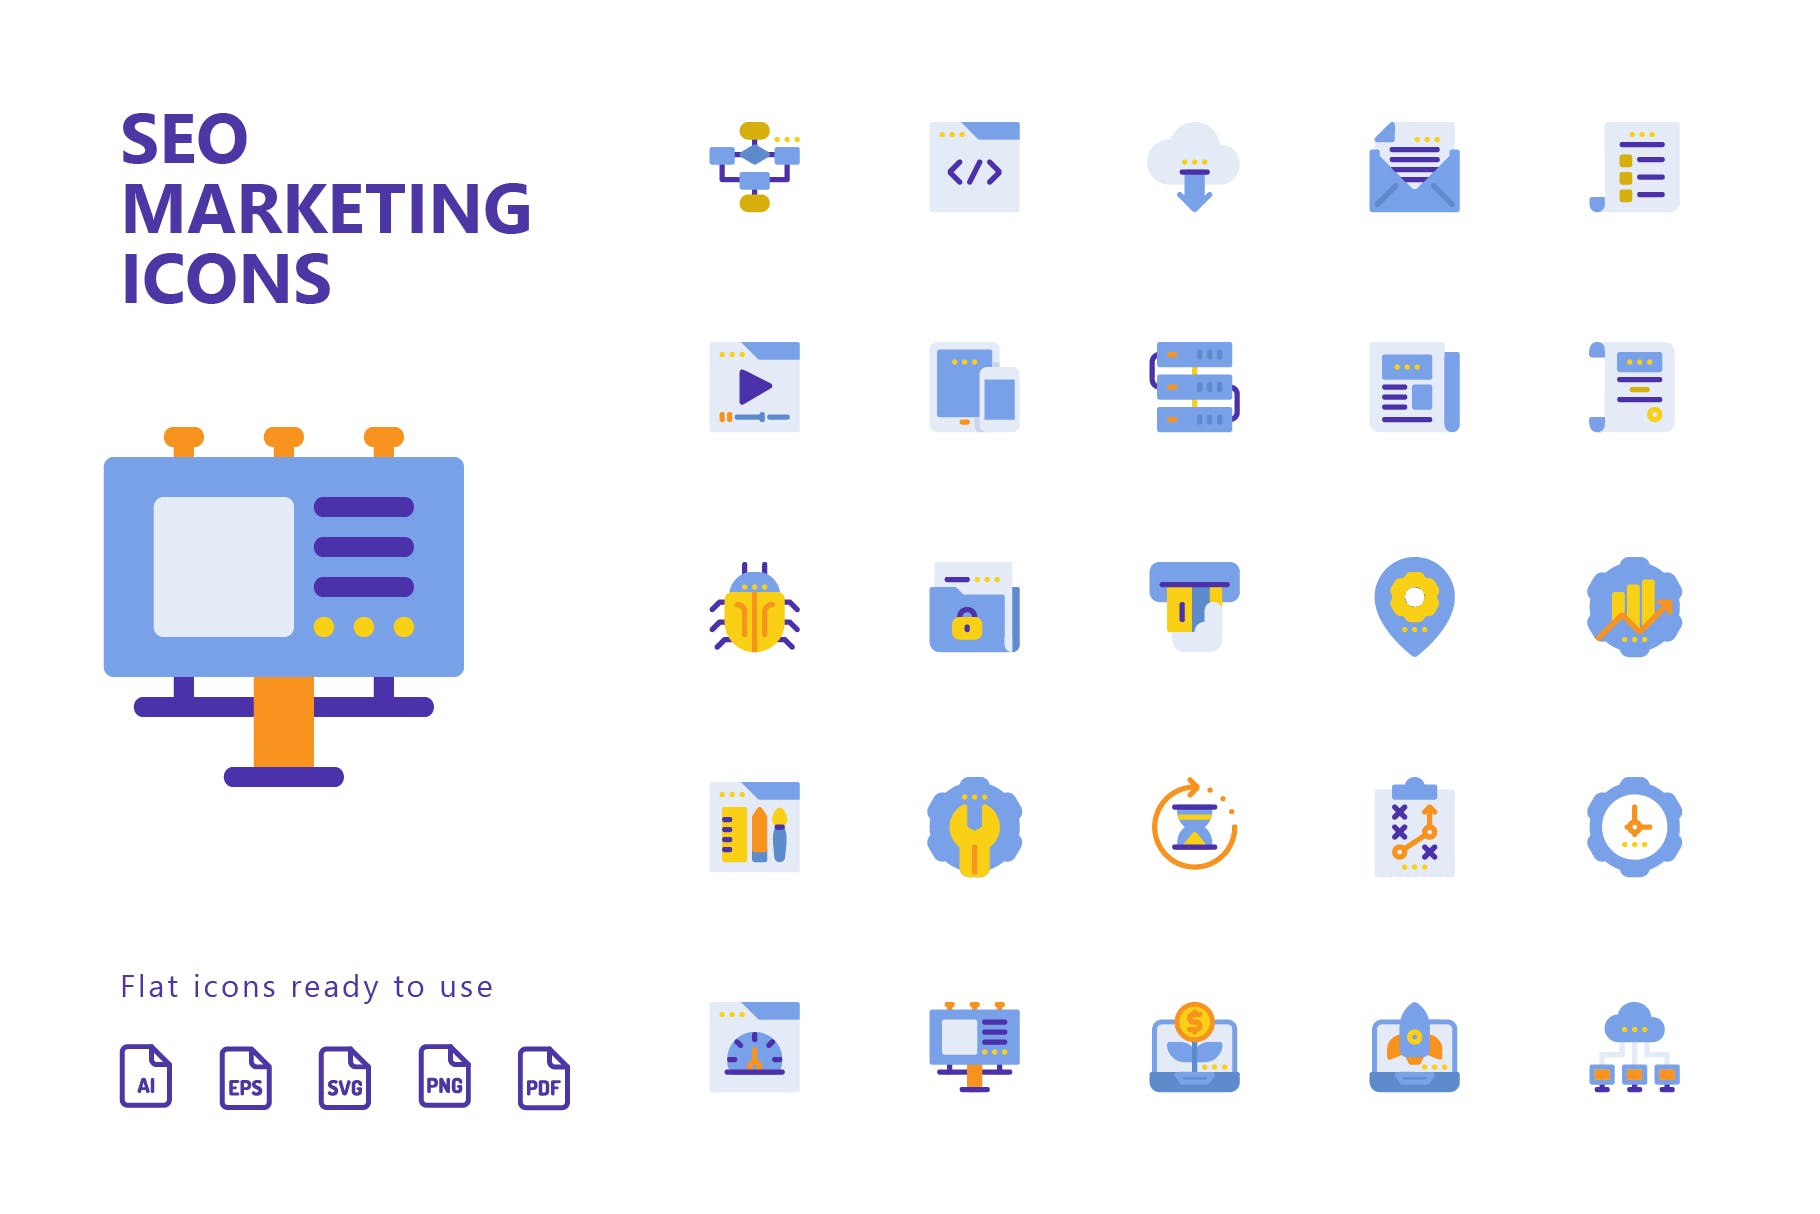 25枚SEO搜索引擎优化营销扁平化矢量蚂蚁素材精选图标v1 SEO Marketing Flat Icons插图(1)